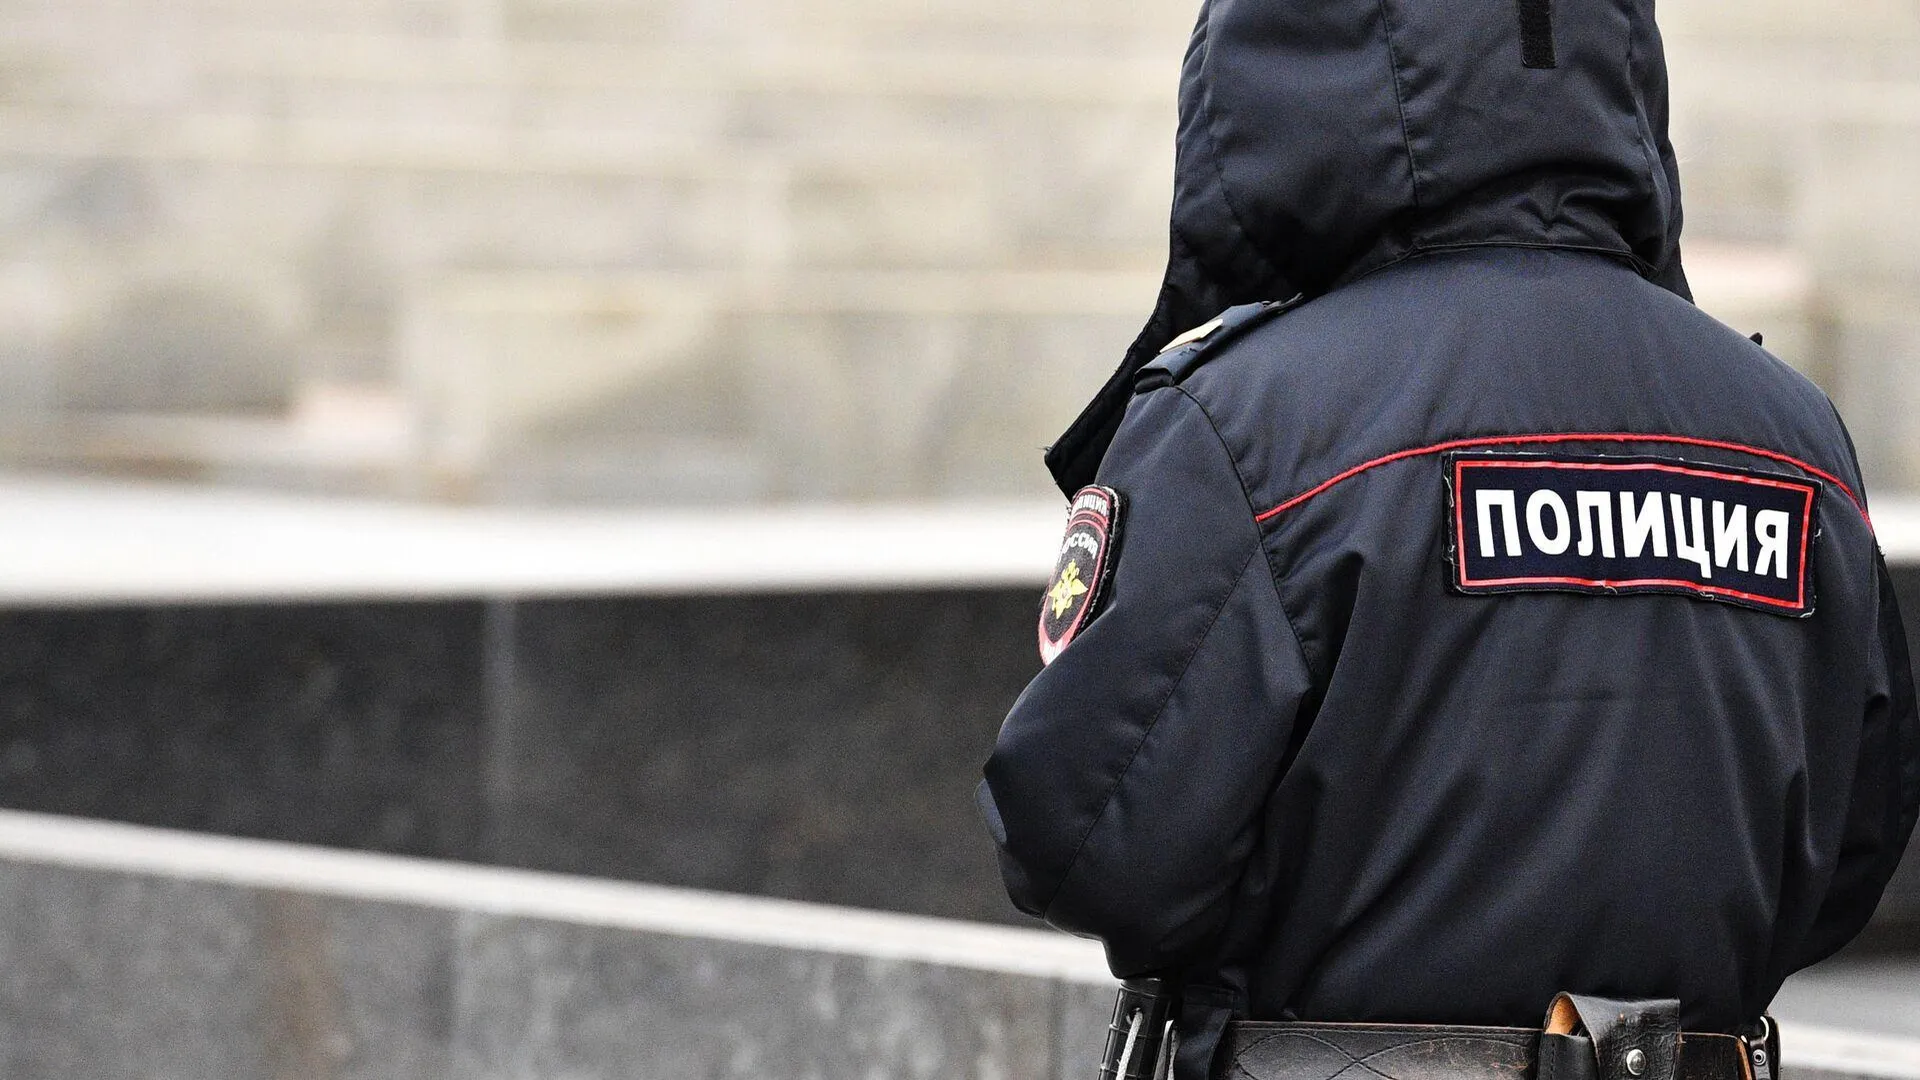 Приезжего стажера-следователя заподозрили в расчленении товарища в Подольске